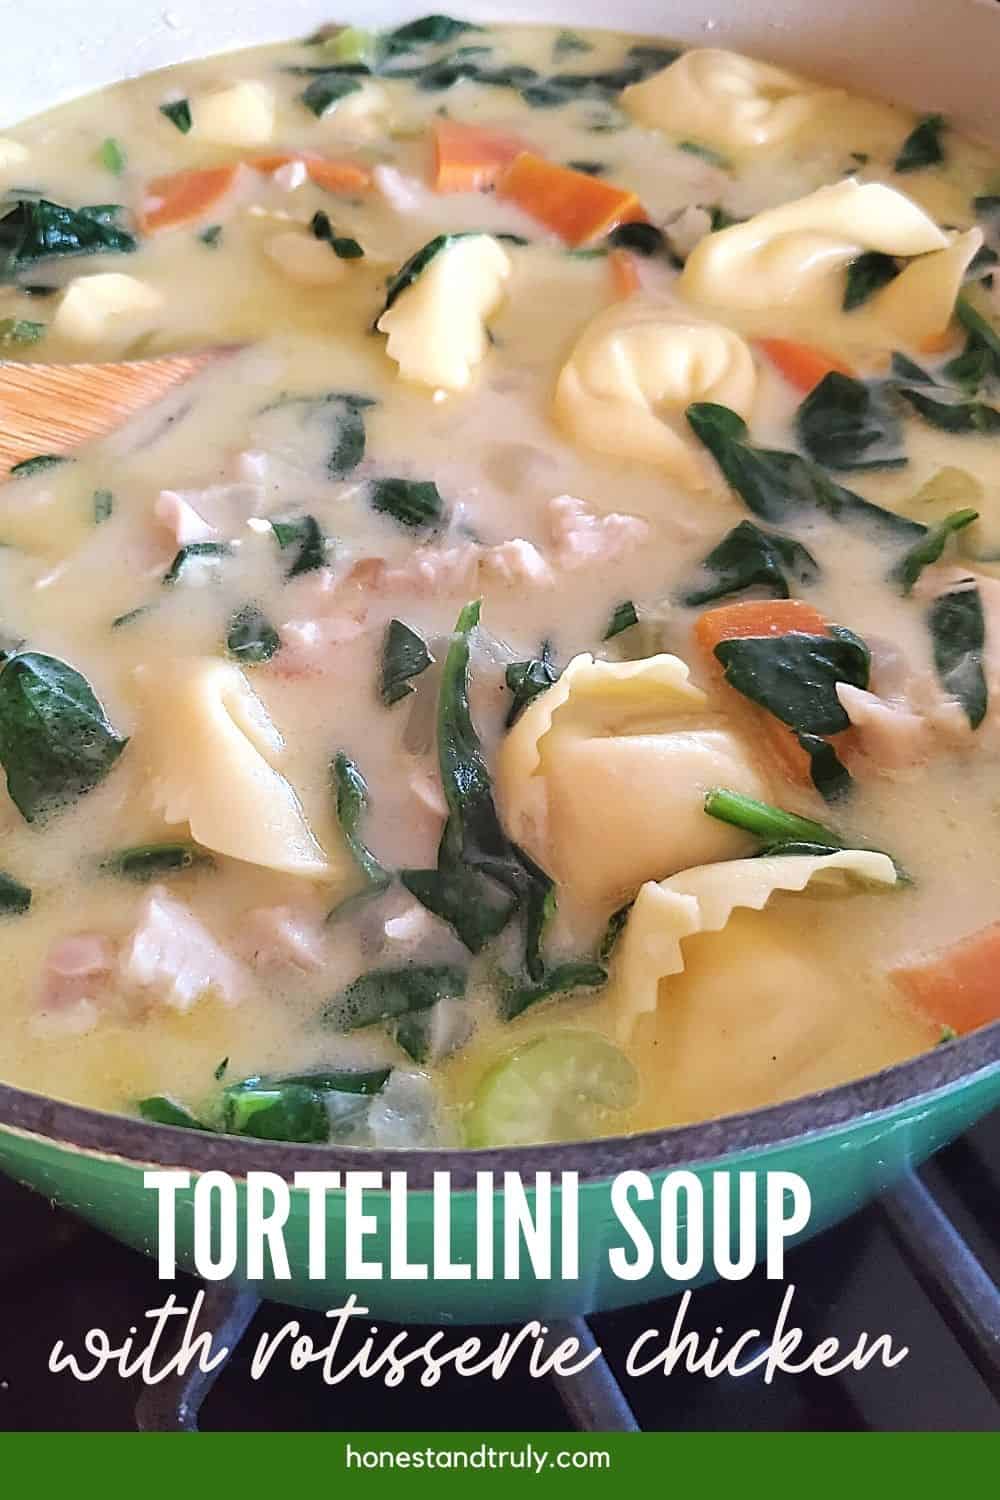 Tortellini soup in a green pot